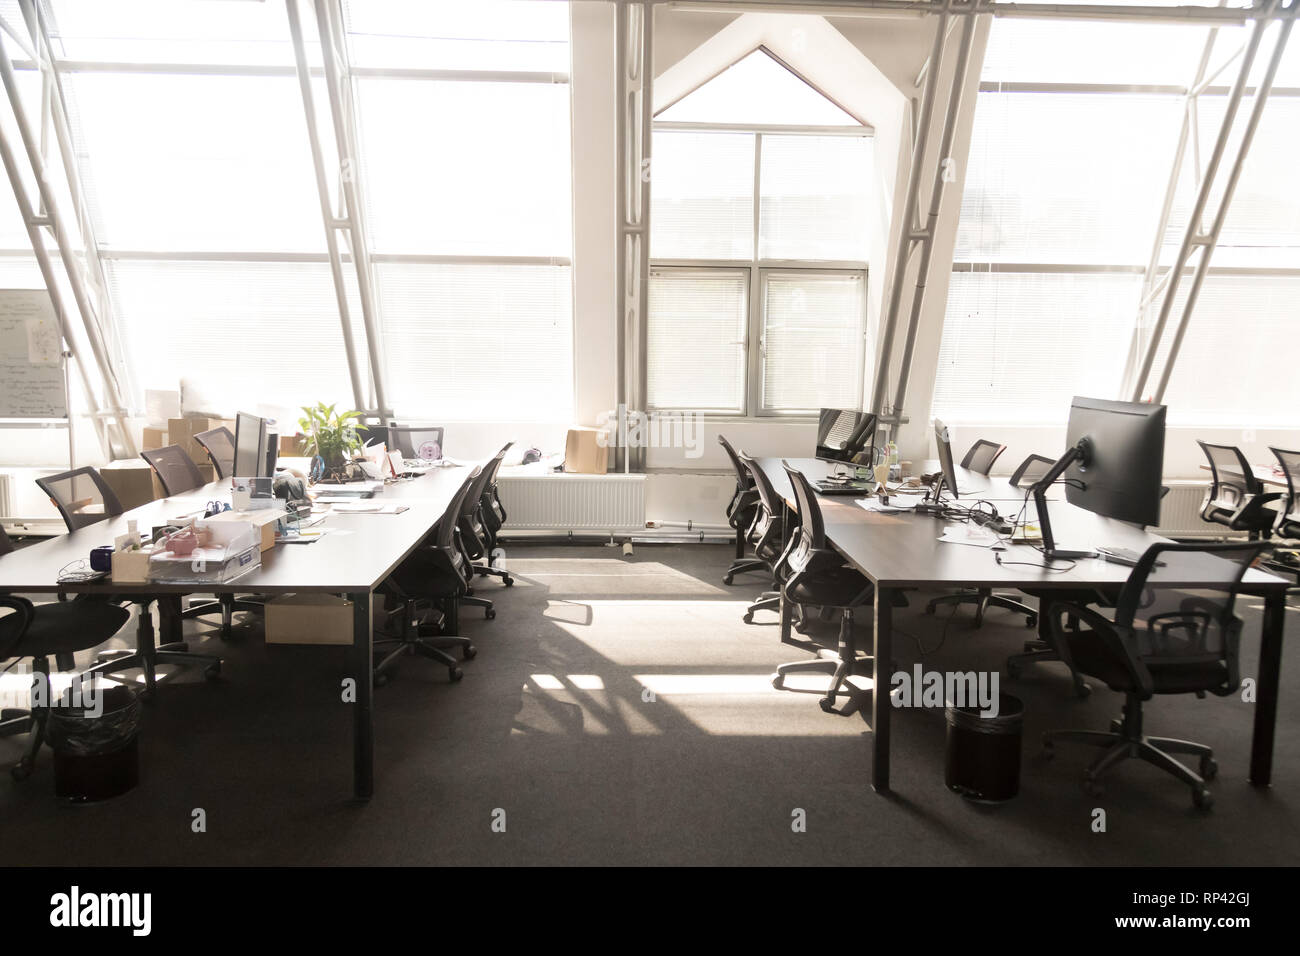 Moderne, helle geräumige Büro Inneneinrichtung. Computer auf Tabellen schwarze Stühle auf Rädern, Sonnenlicht durch die Panoramafenster. Komfortable contempora Stockfoto